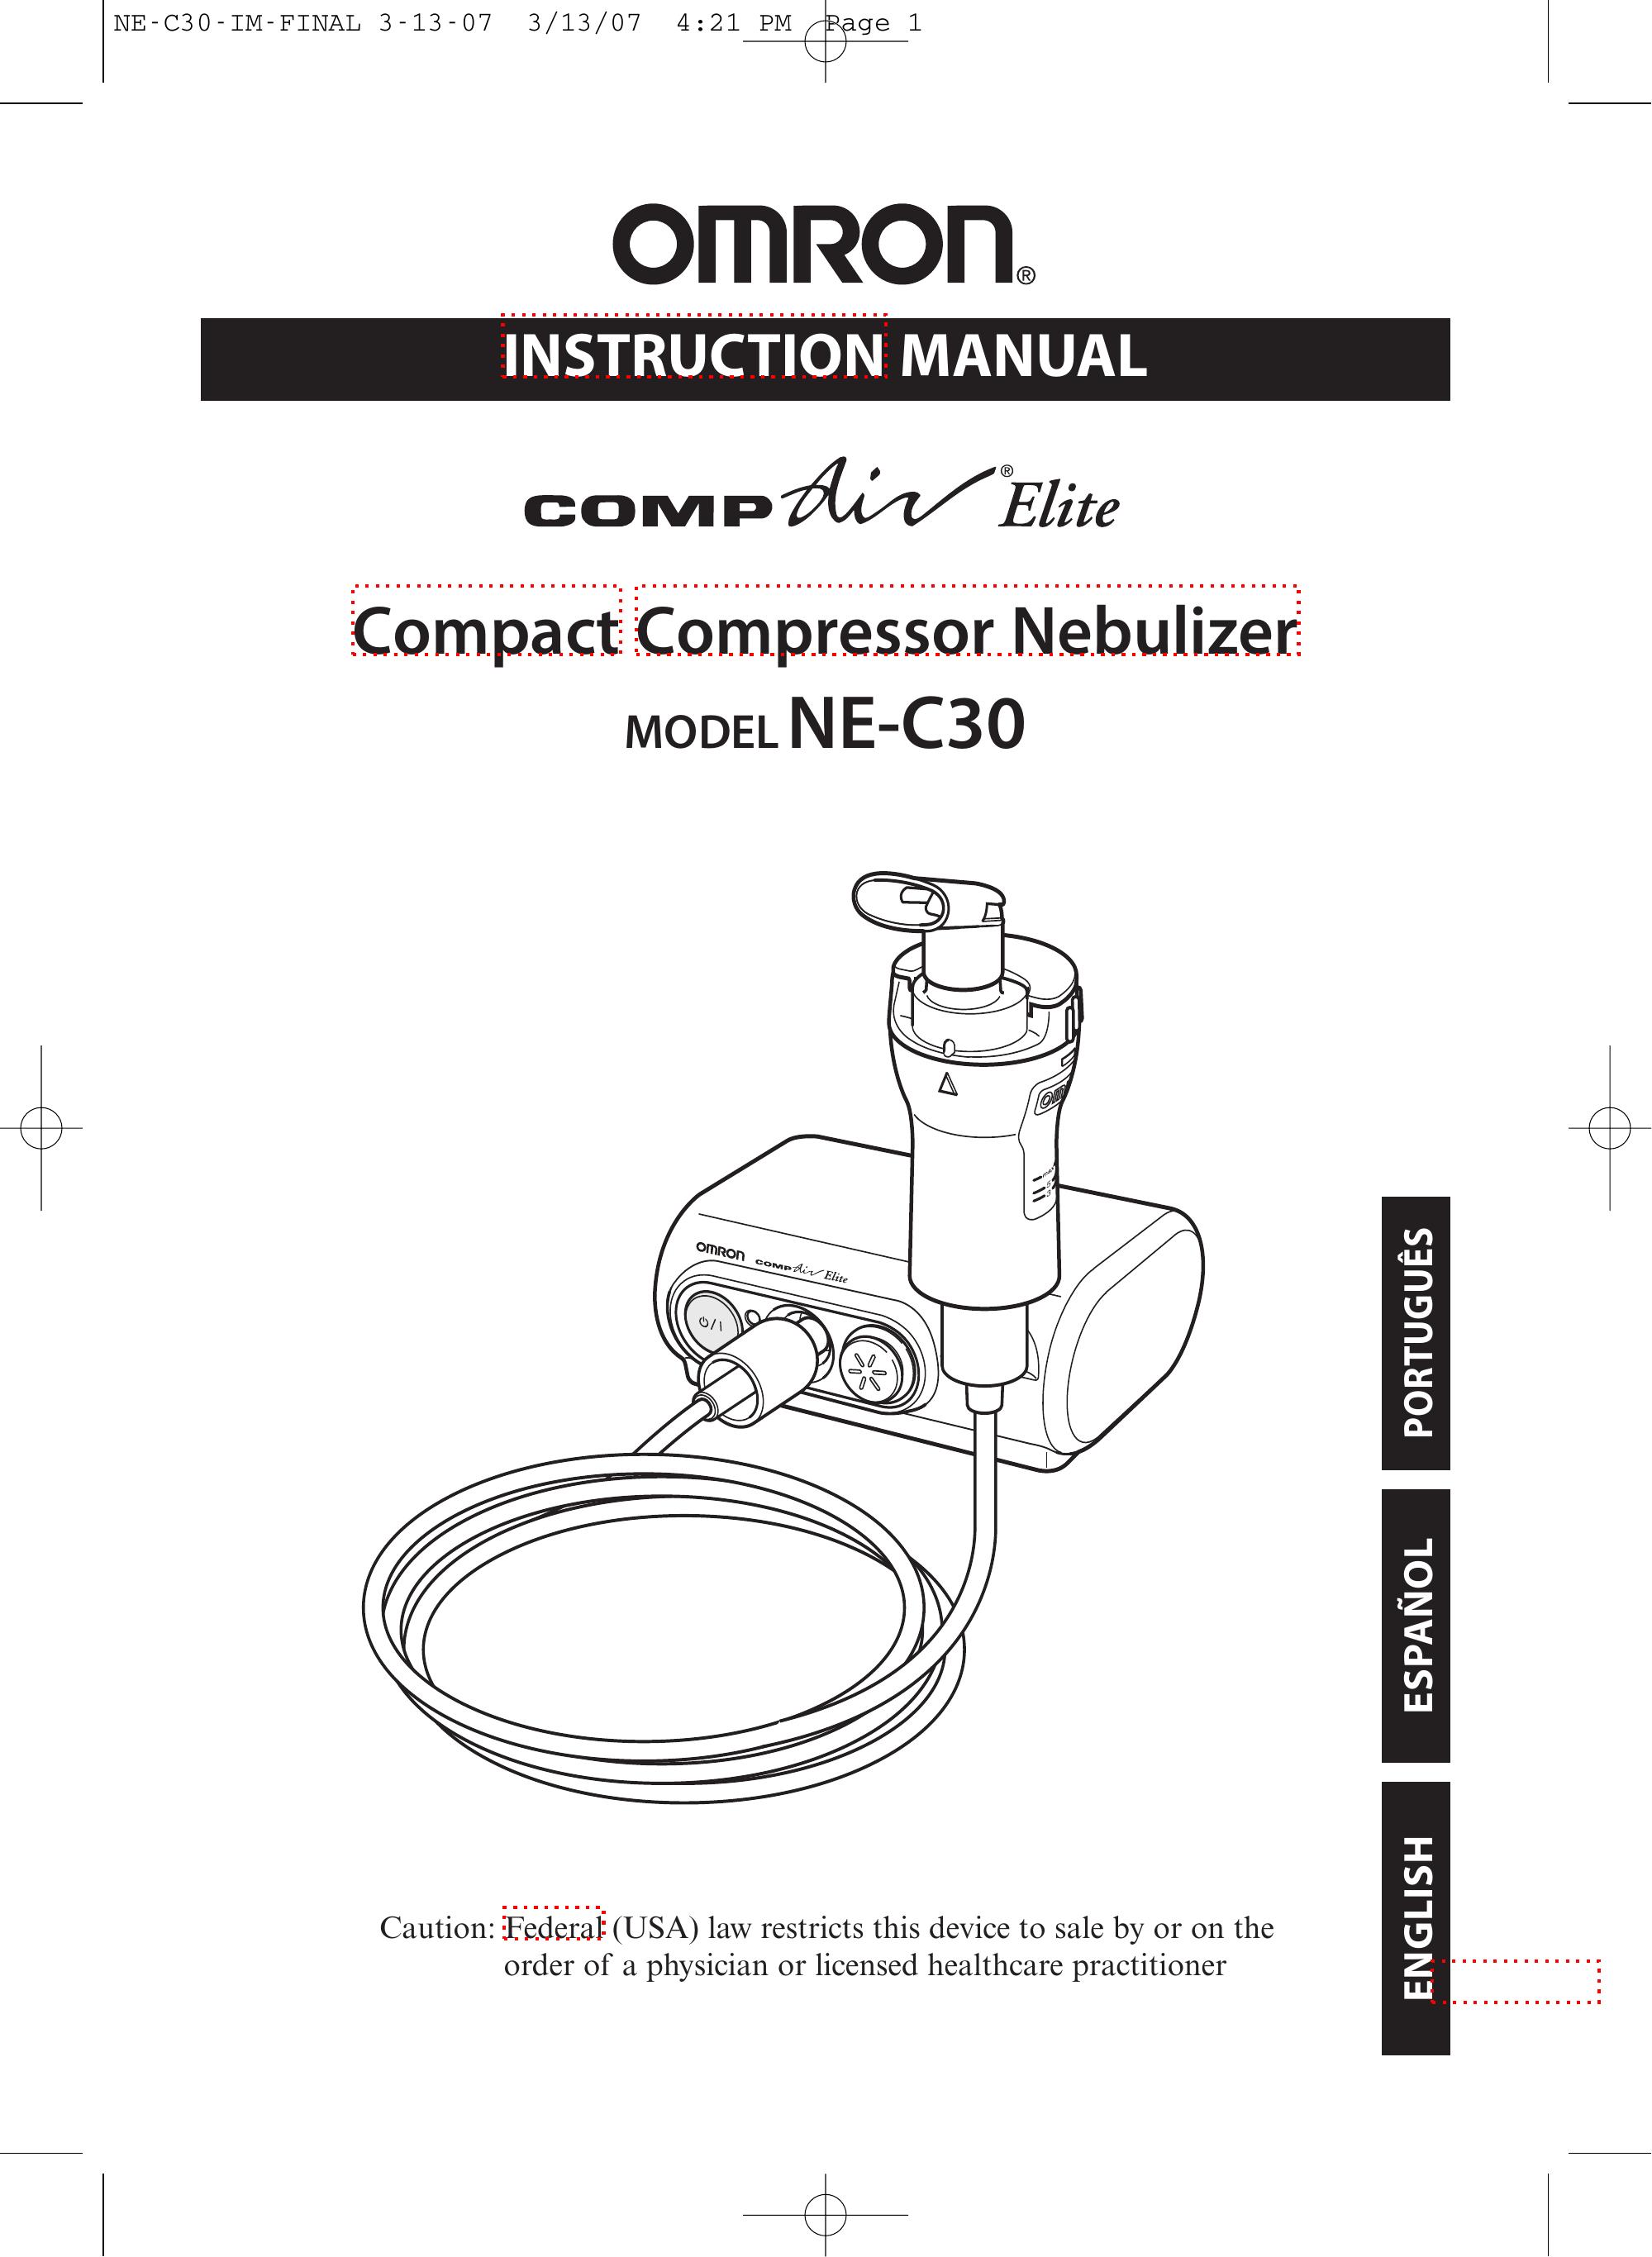 Omron NE-C30 Nebulizer User Manual